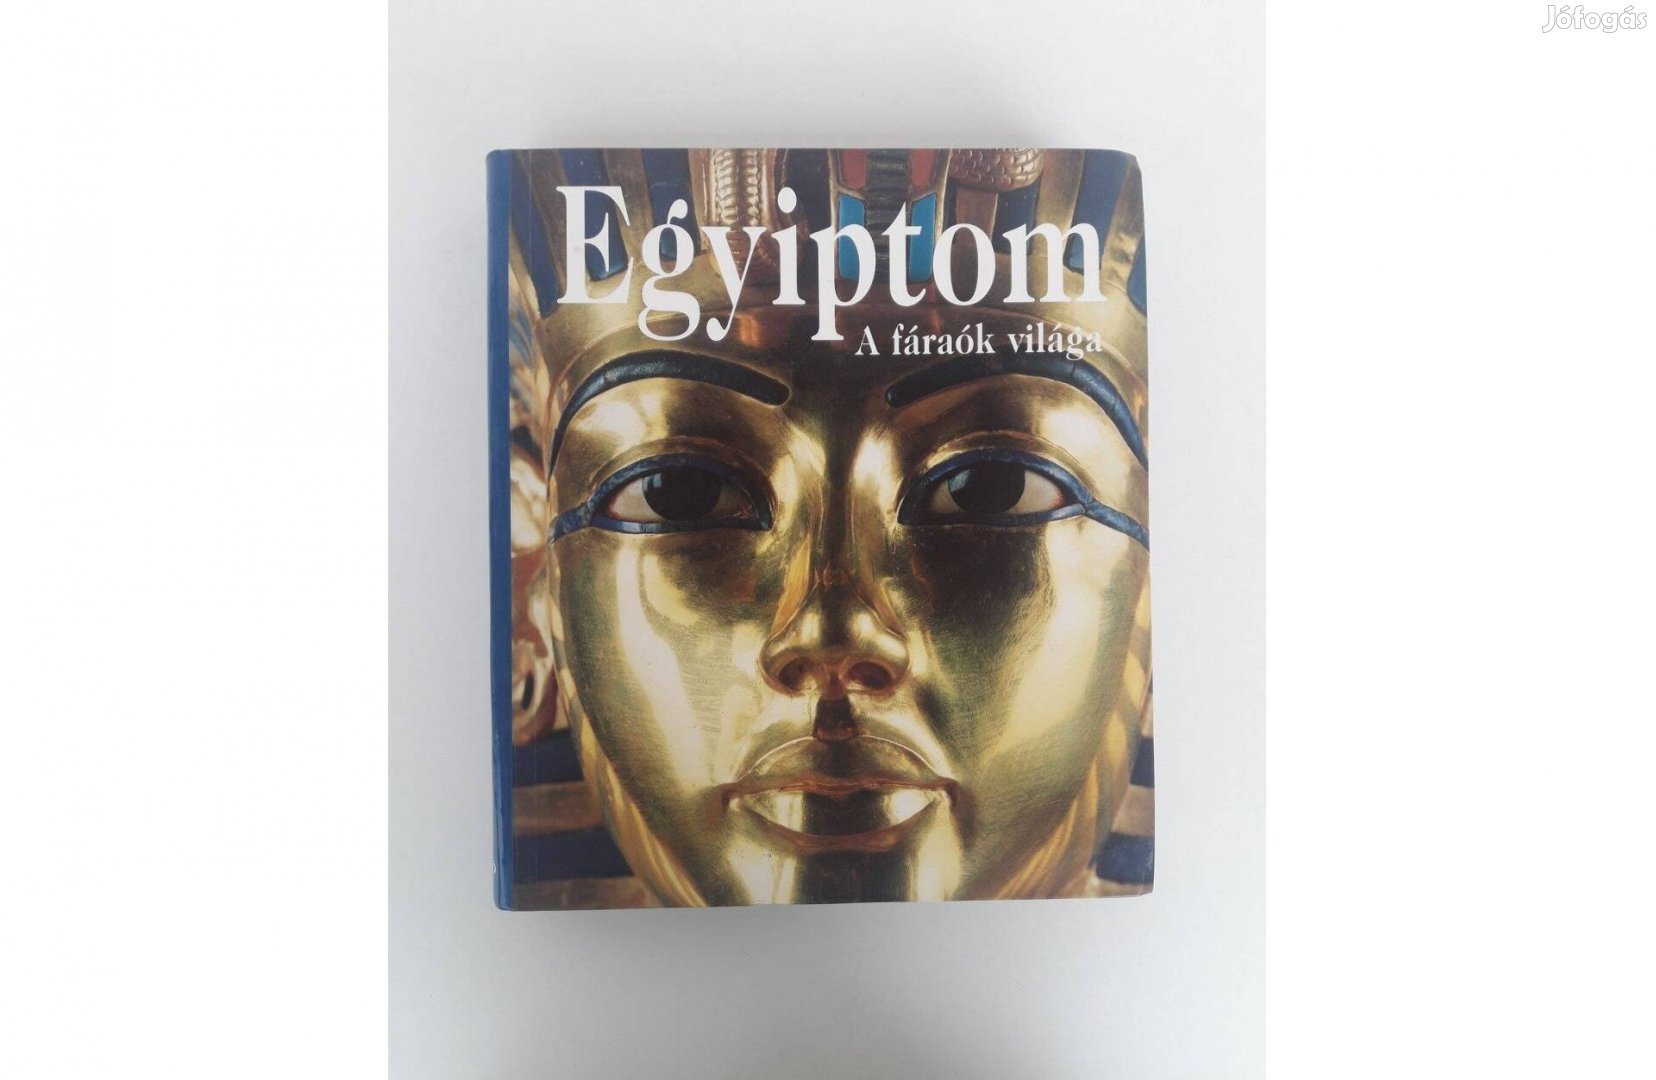 Egyiptom, a fáraók világa könyv szép állapotban eladó